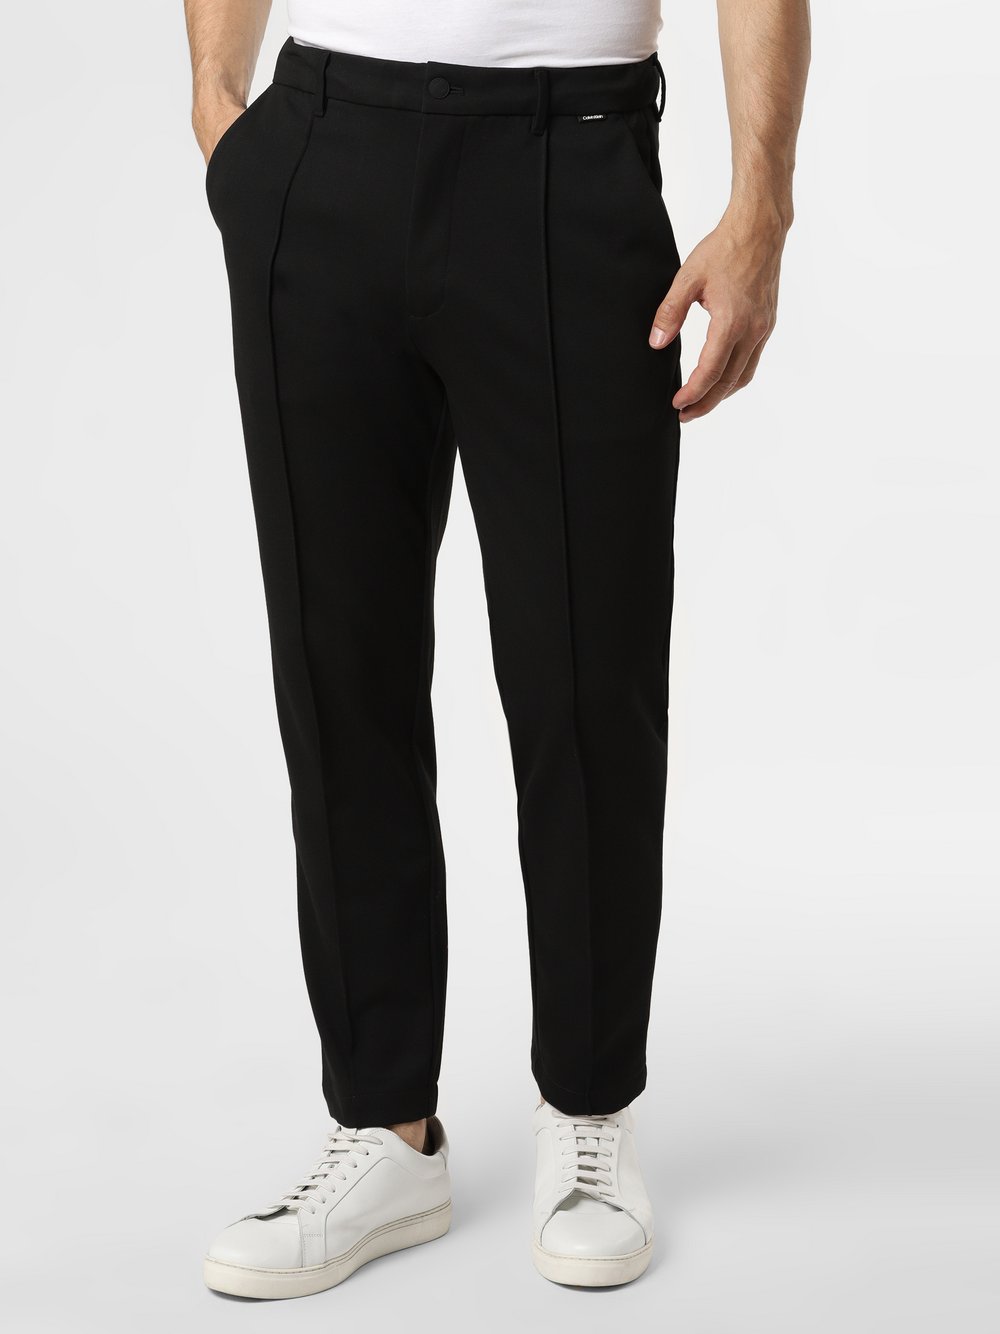 Calvin Klein - Spodnie męskie, czarny